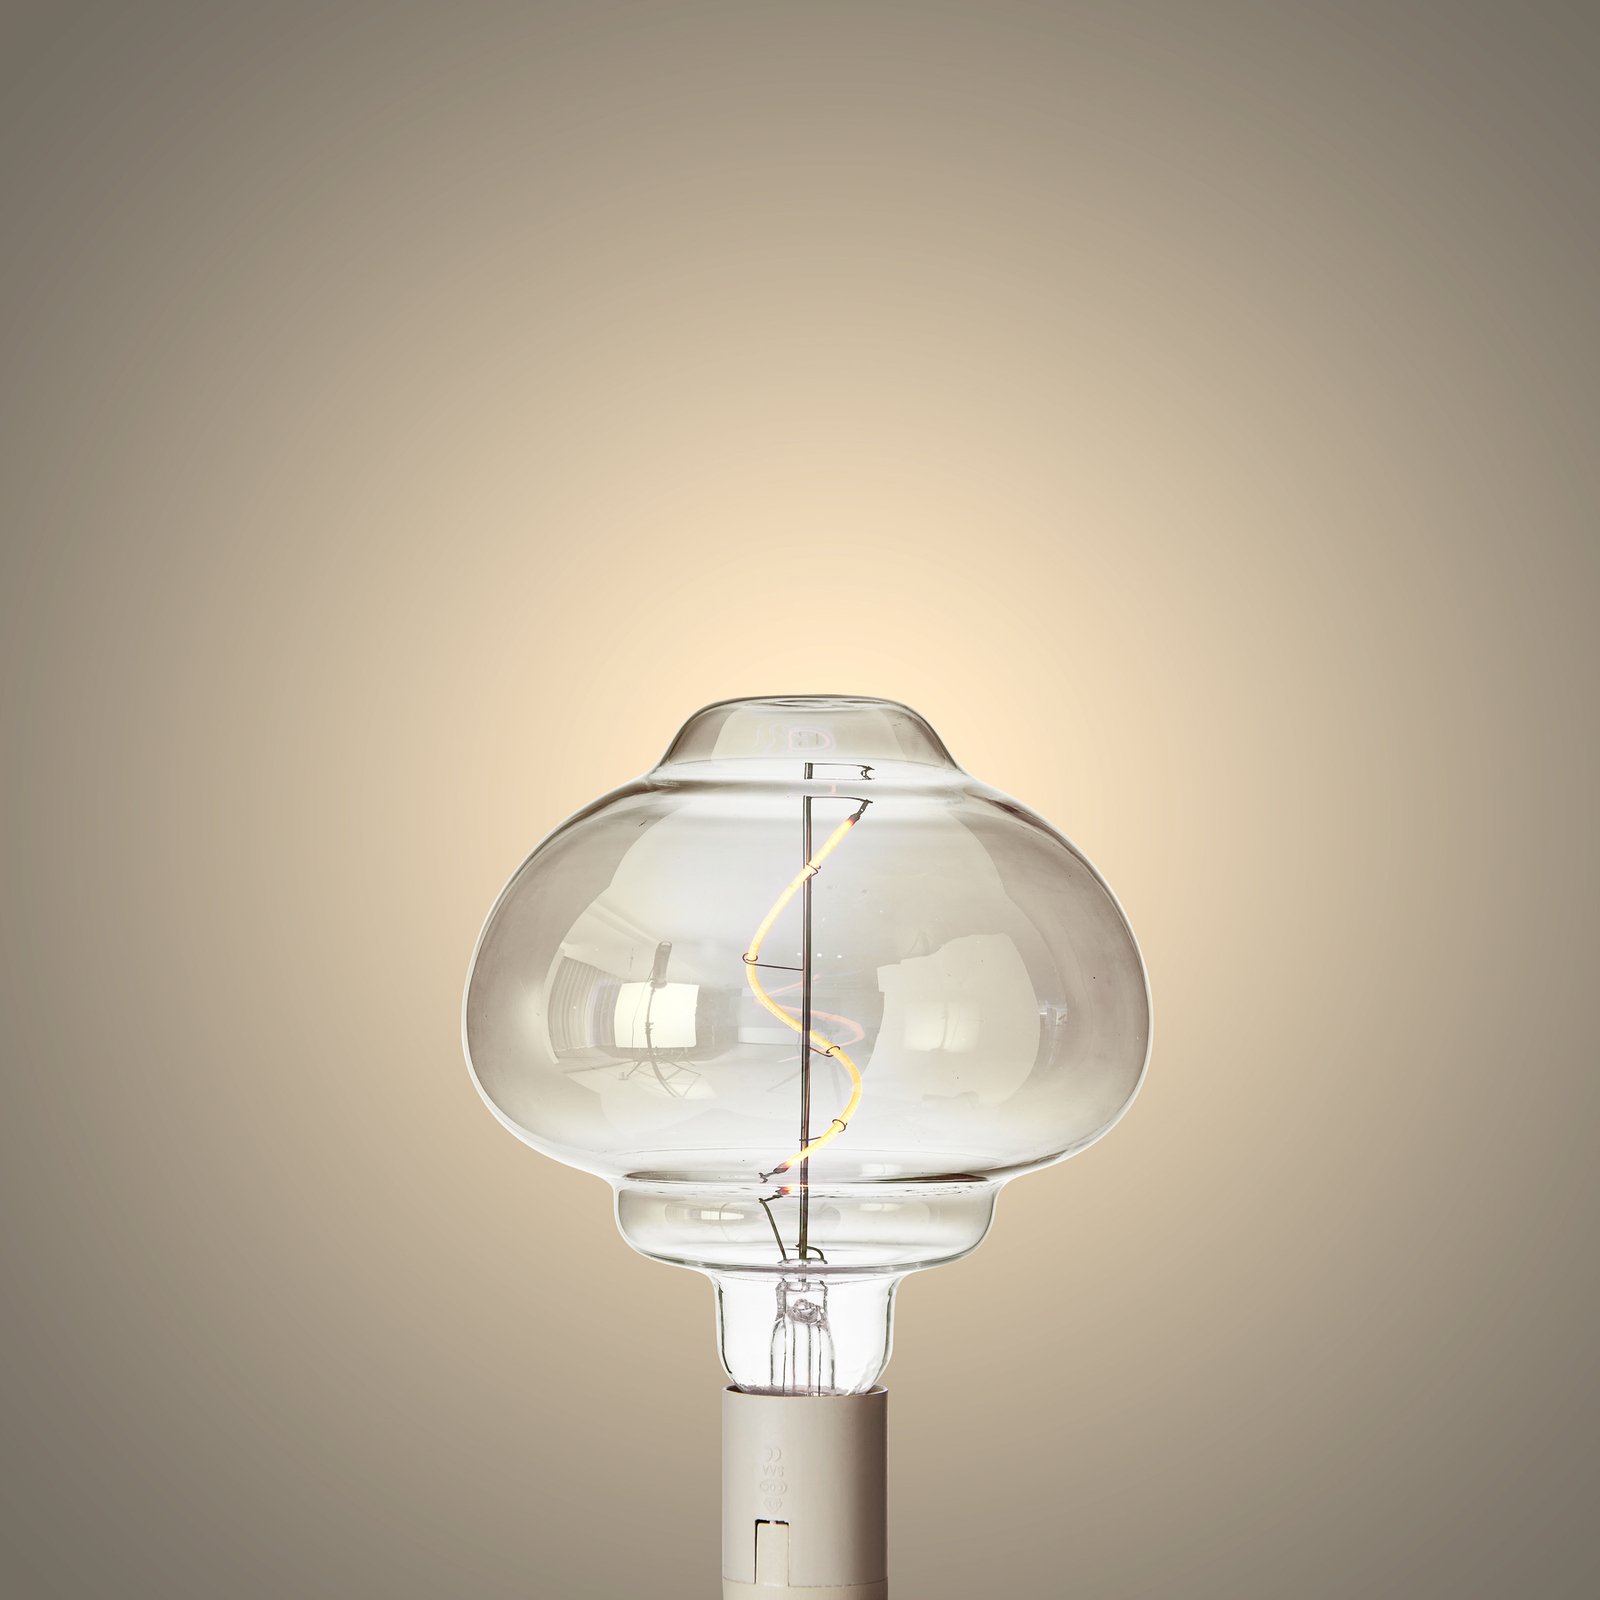 Lucande LED lamp E27 Ø 16cm 4W 1800K smoke